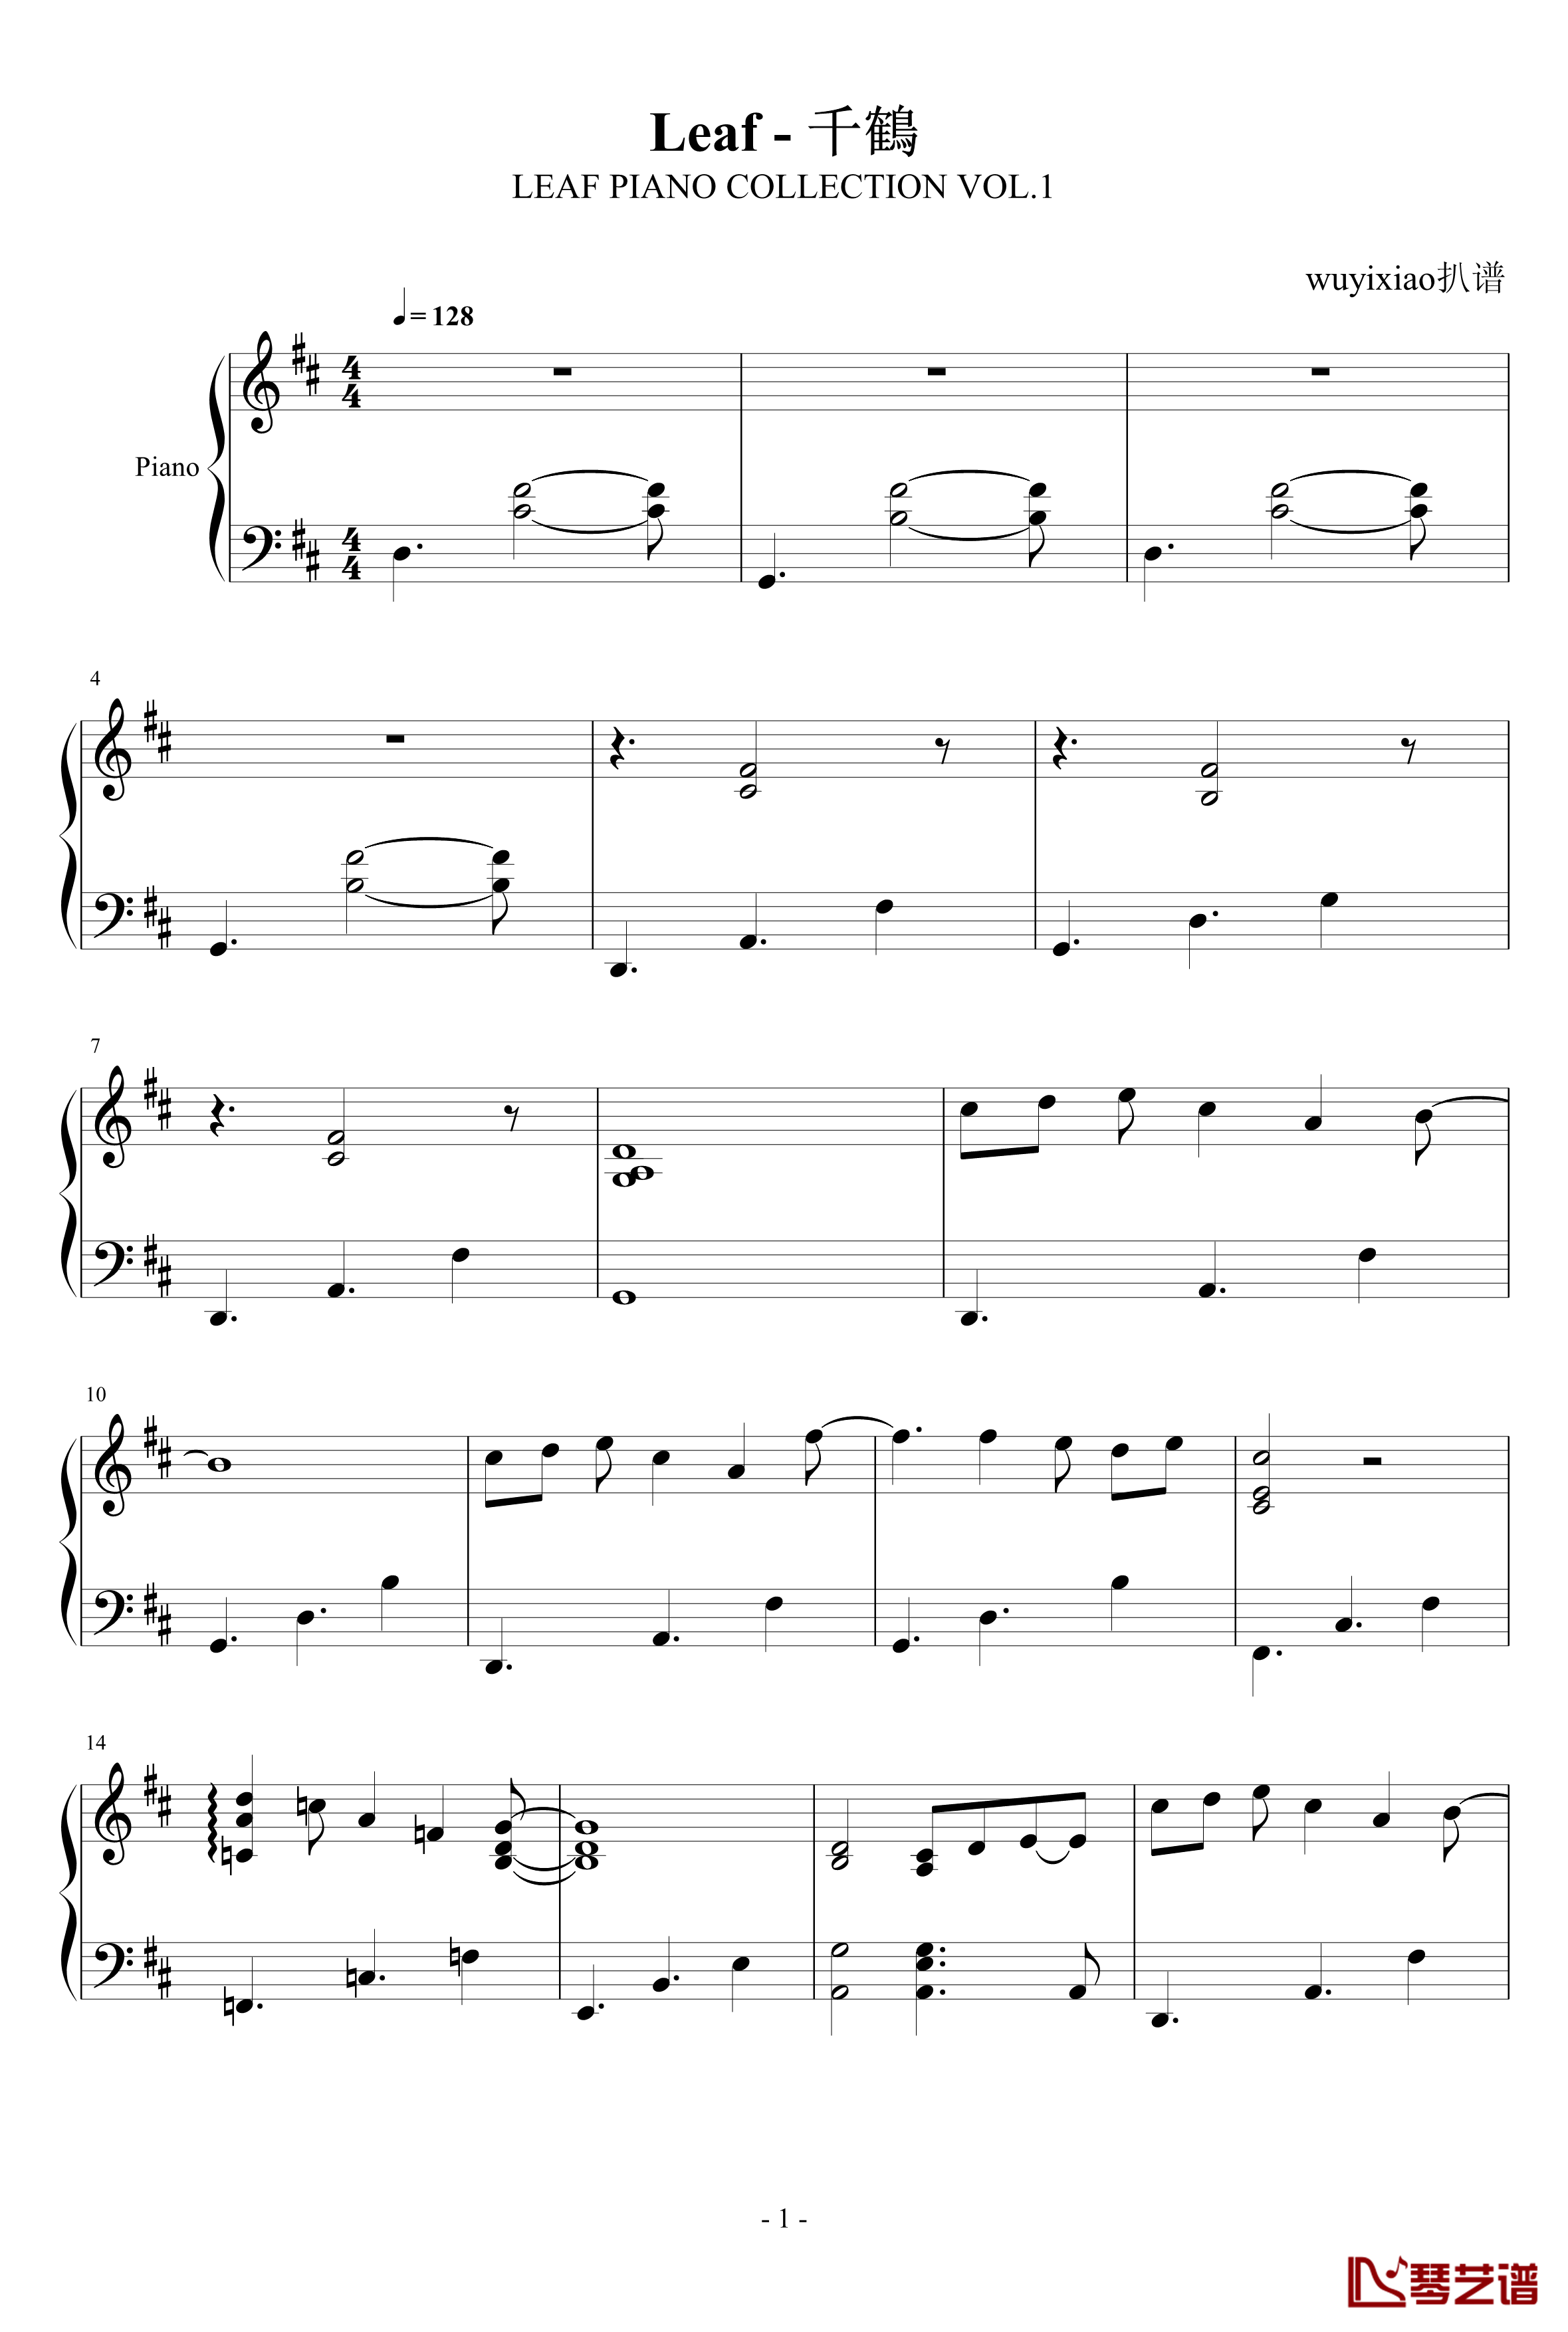 千鶴钢琴谱-LEAF PIANO COLLECTION VOL.1-Leaf1